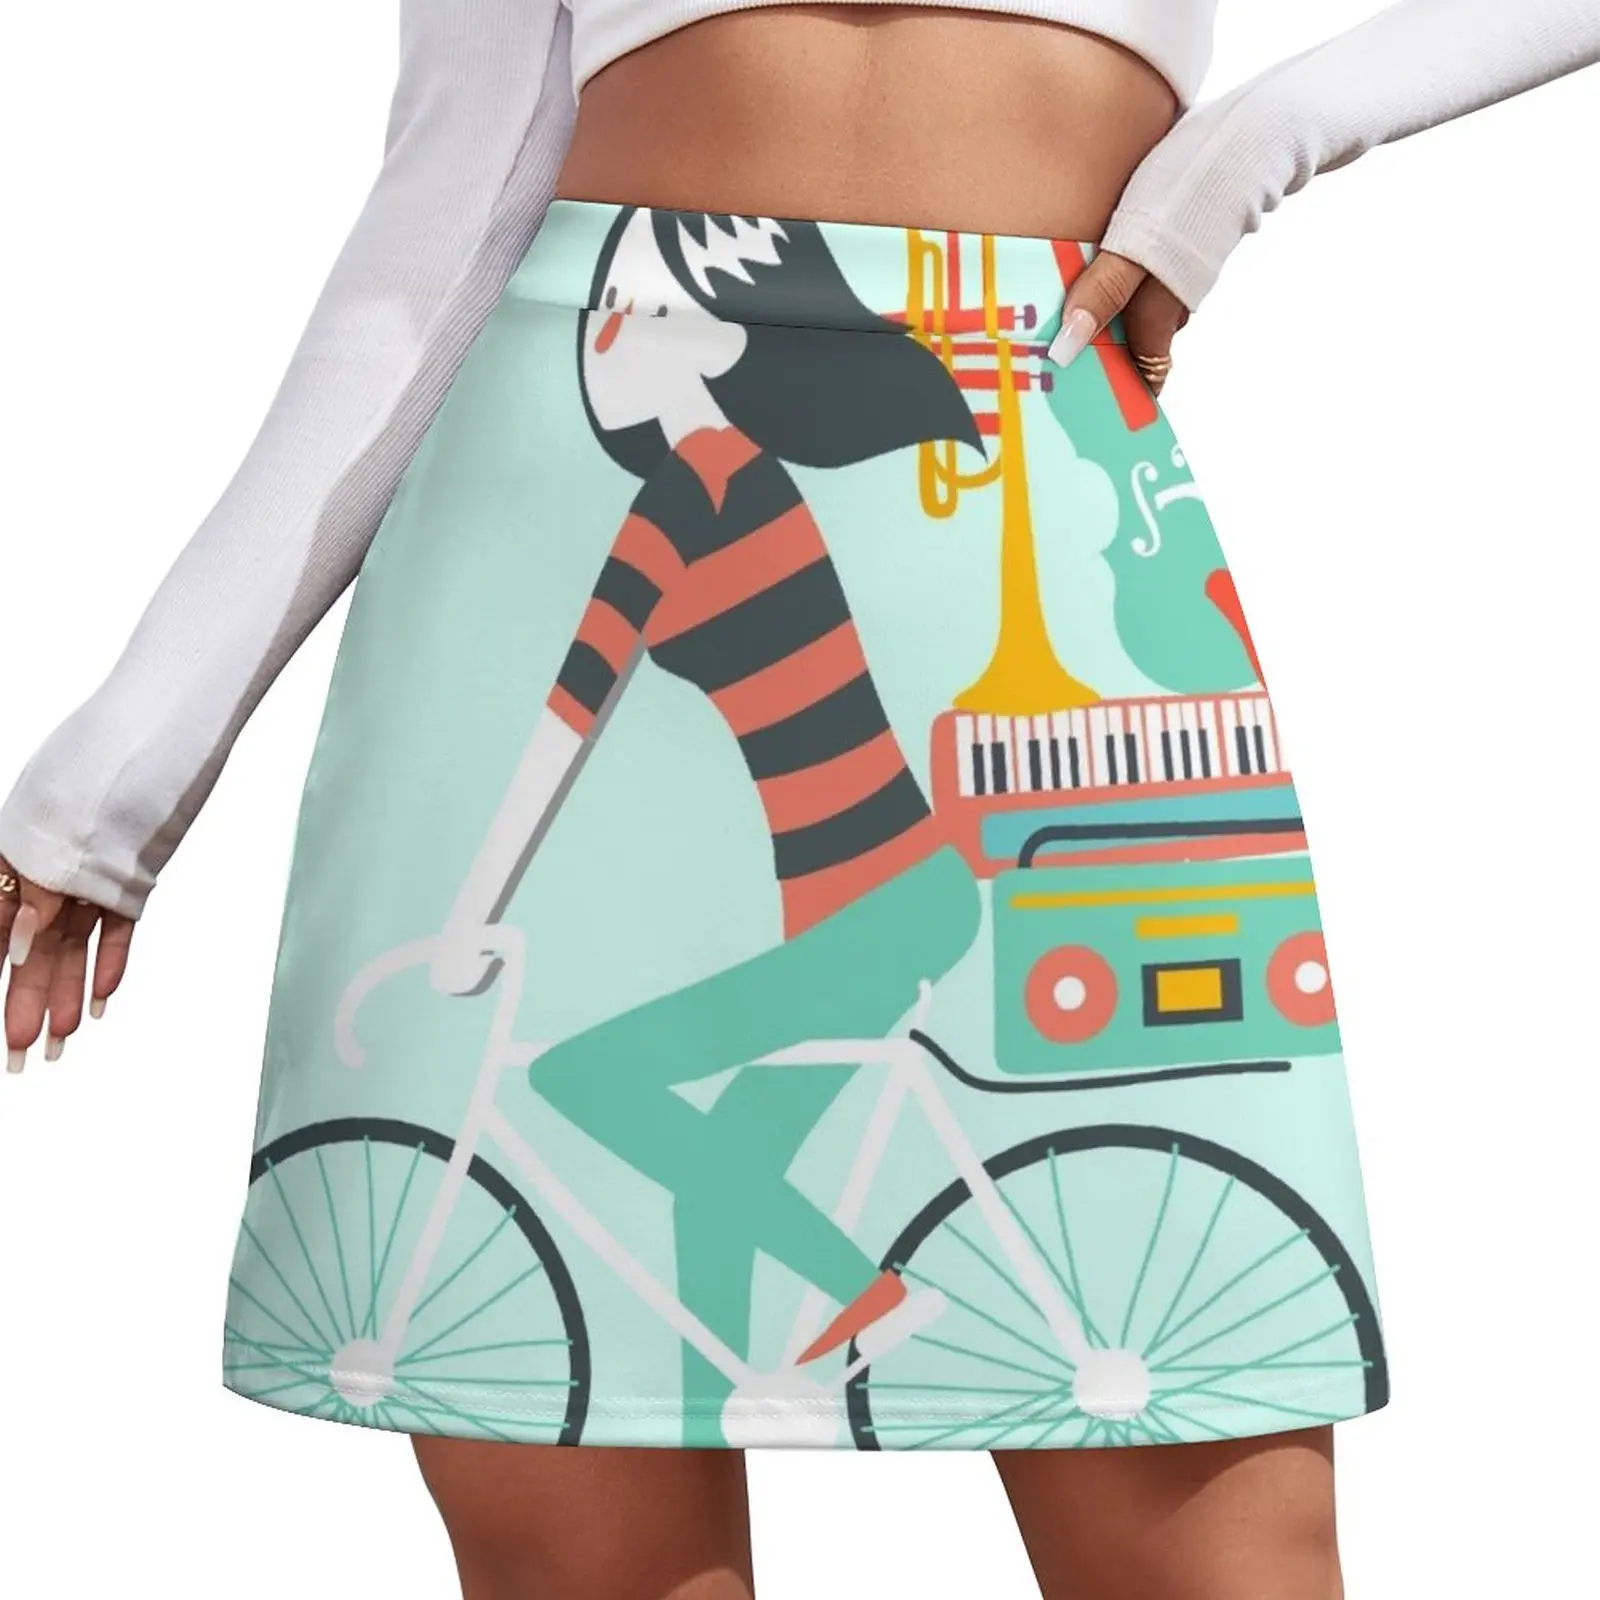 All musical instruments in the bike luggage Mini Skirt Women's skirt Summer women's clothing short skirts for women